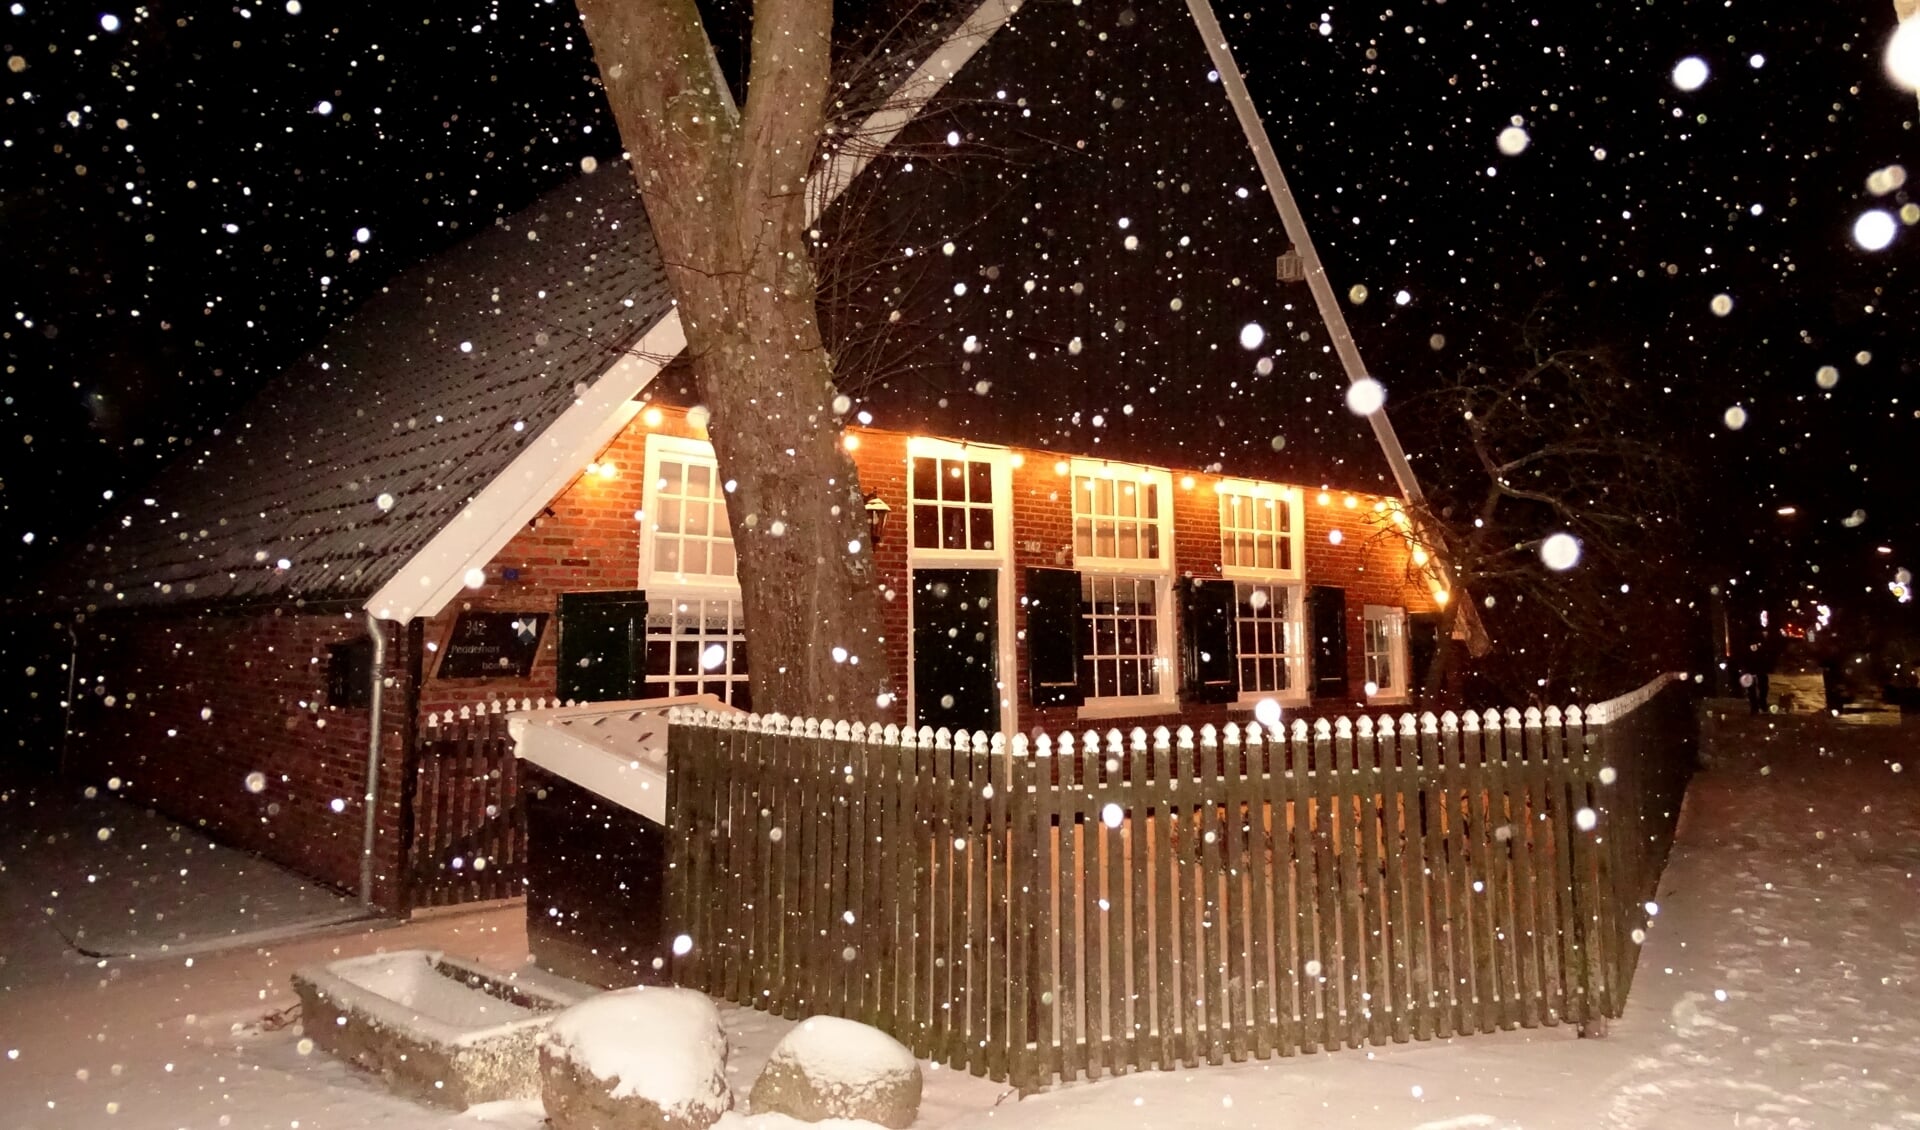 De Peddemorsboerderij wordt in kerstsfeer aangekleed, de sneeuw is er al.